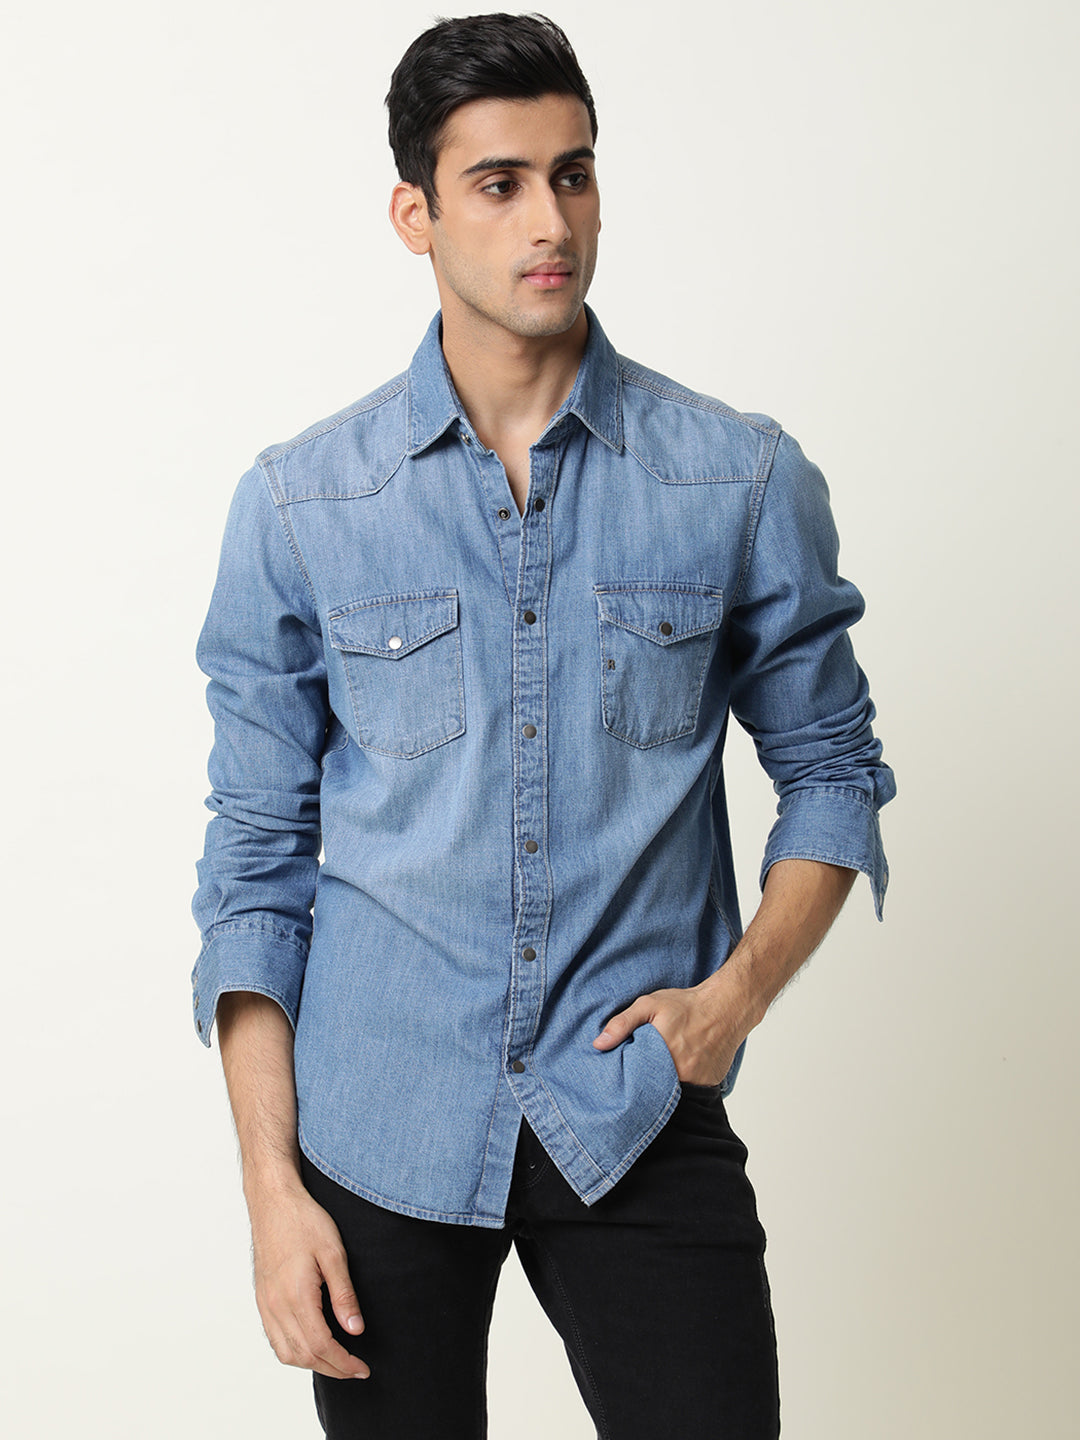 Buy Blue Denim Full Sleeves Shirt for Boys Online at Jack&Jones Junior  |288813102